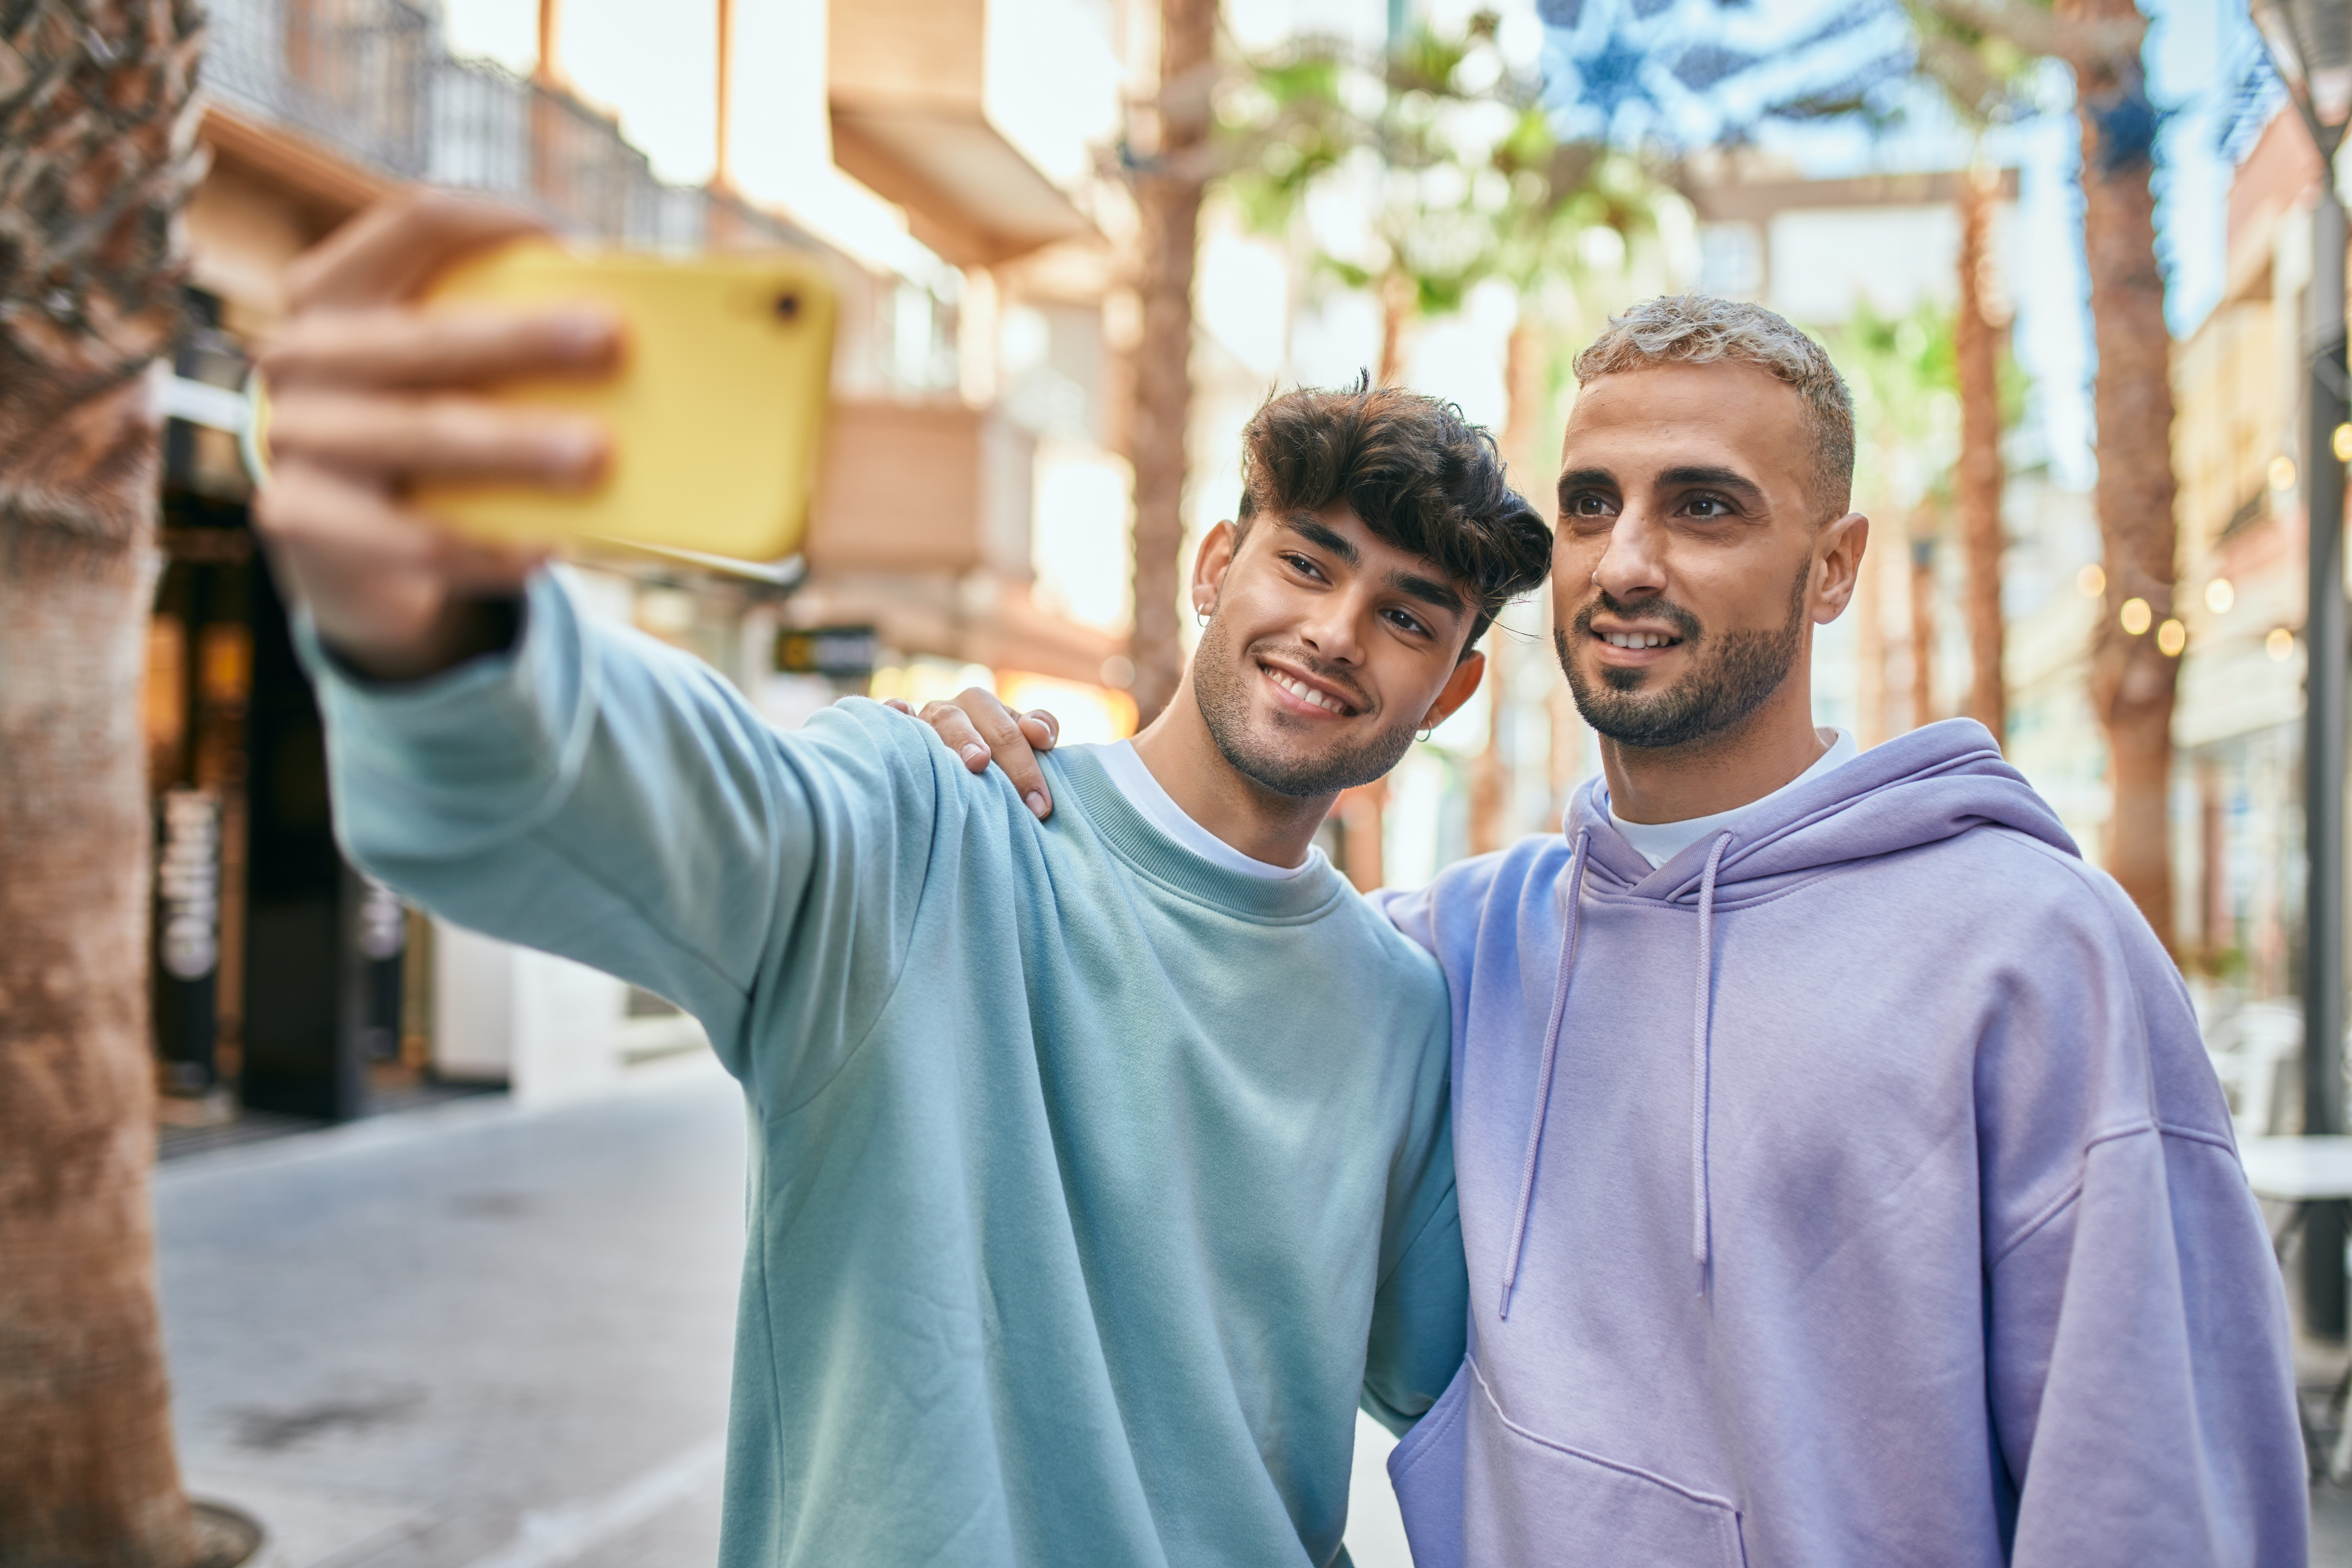 Deux jeunes hommes prenant une photo ensemble | Source : Shutterstock